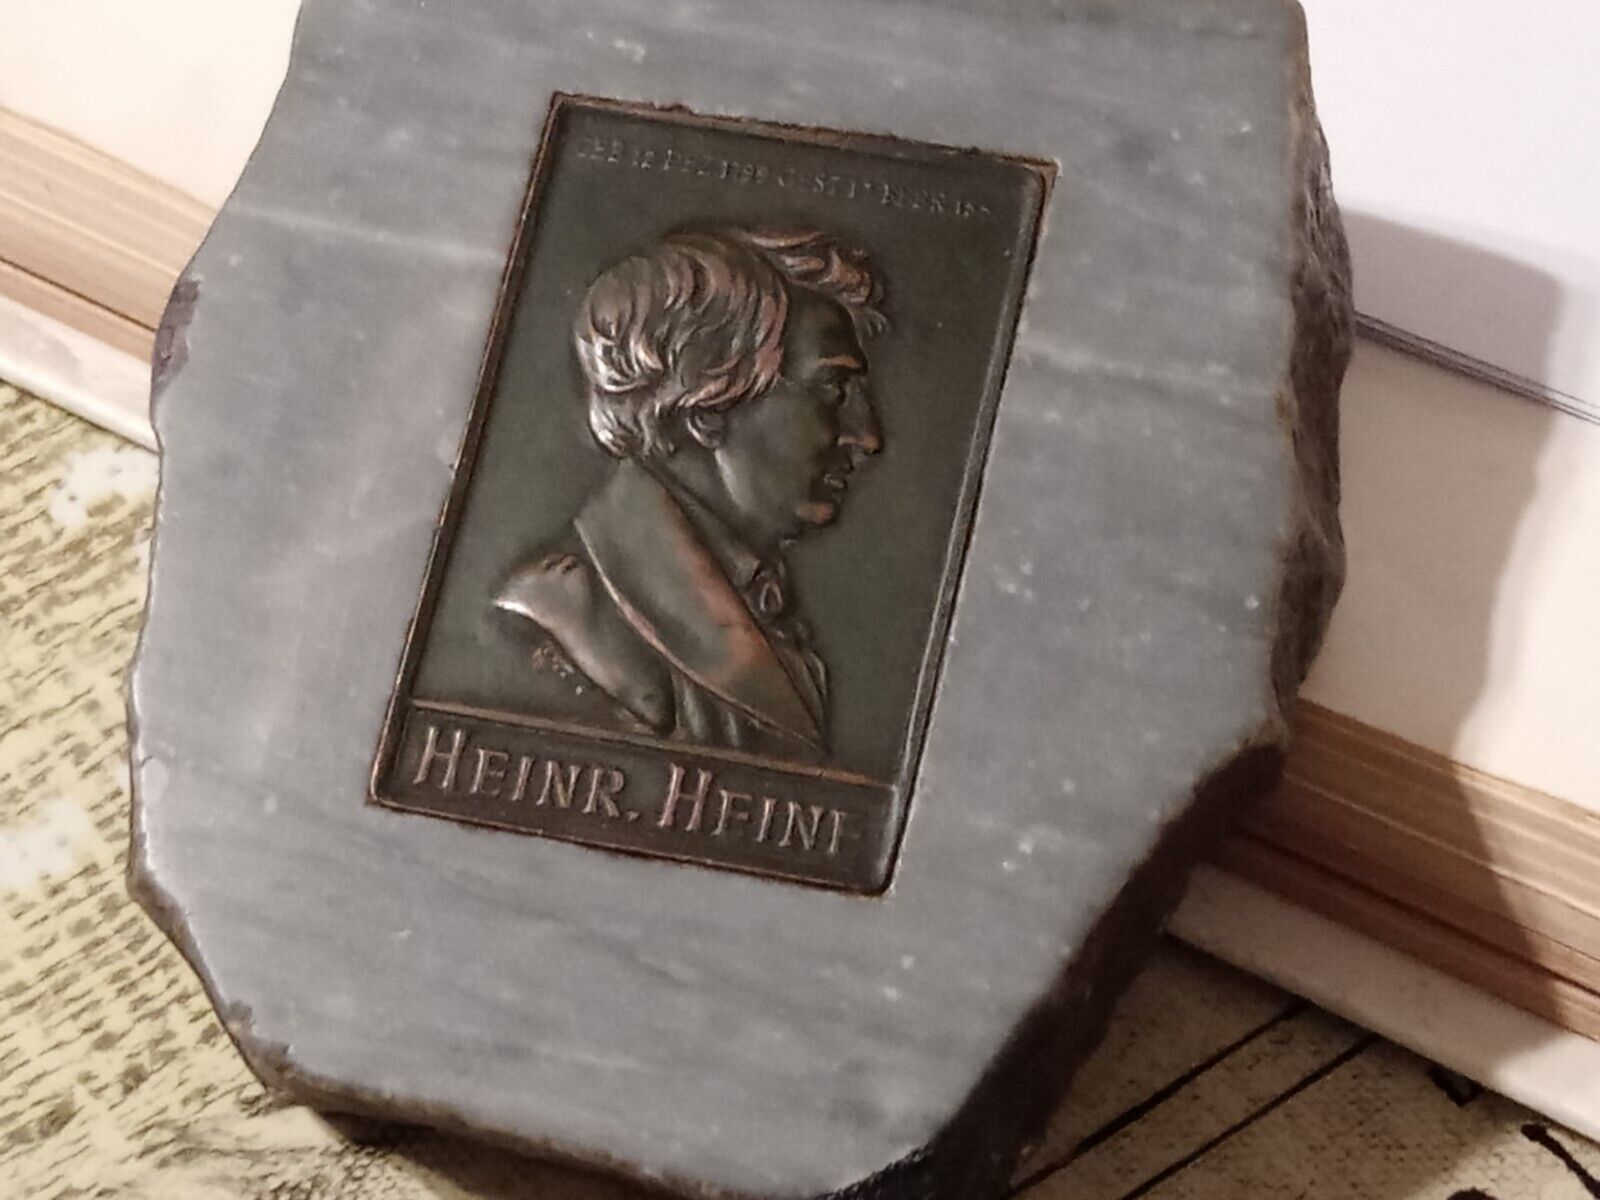 Heinrich Heine Marble Paperweight W/Plaque Metalic Medal German Poet